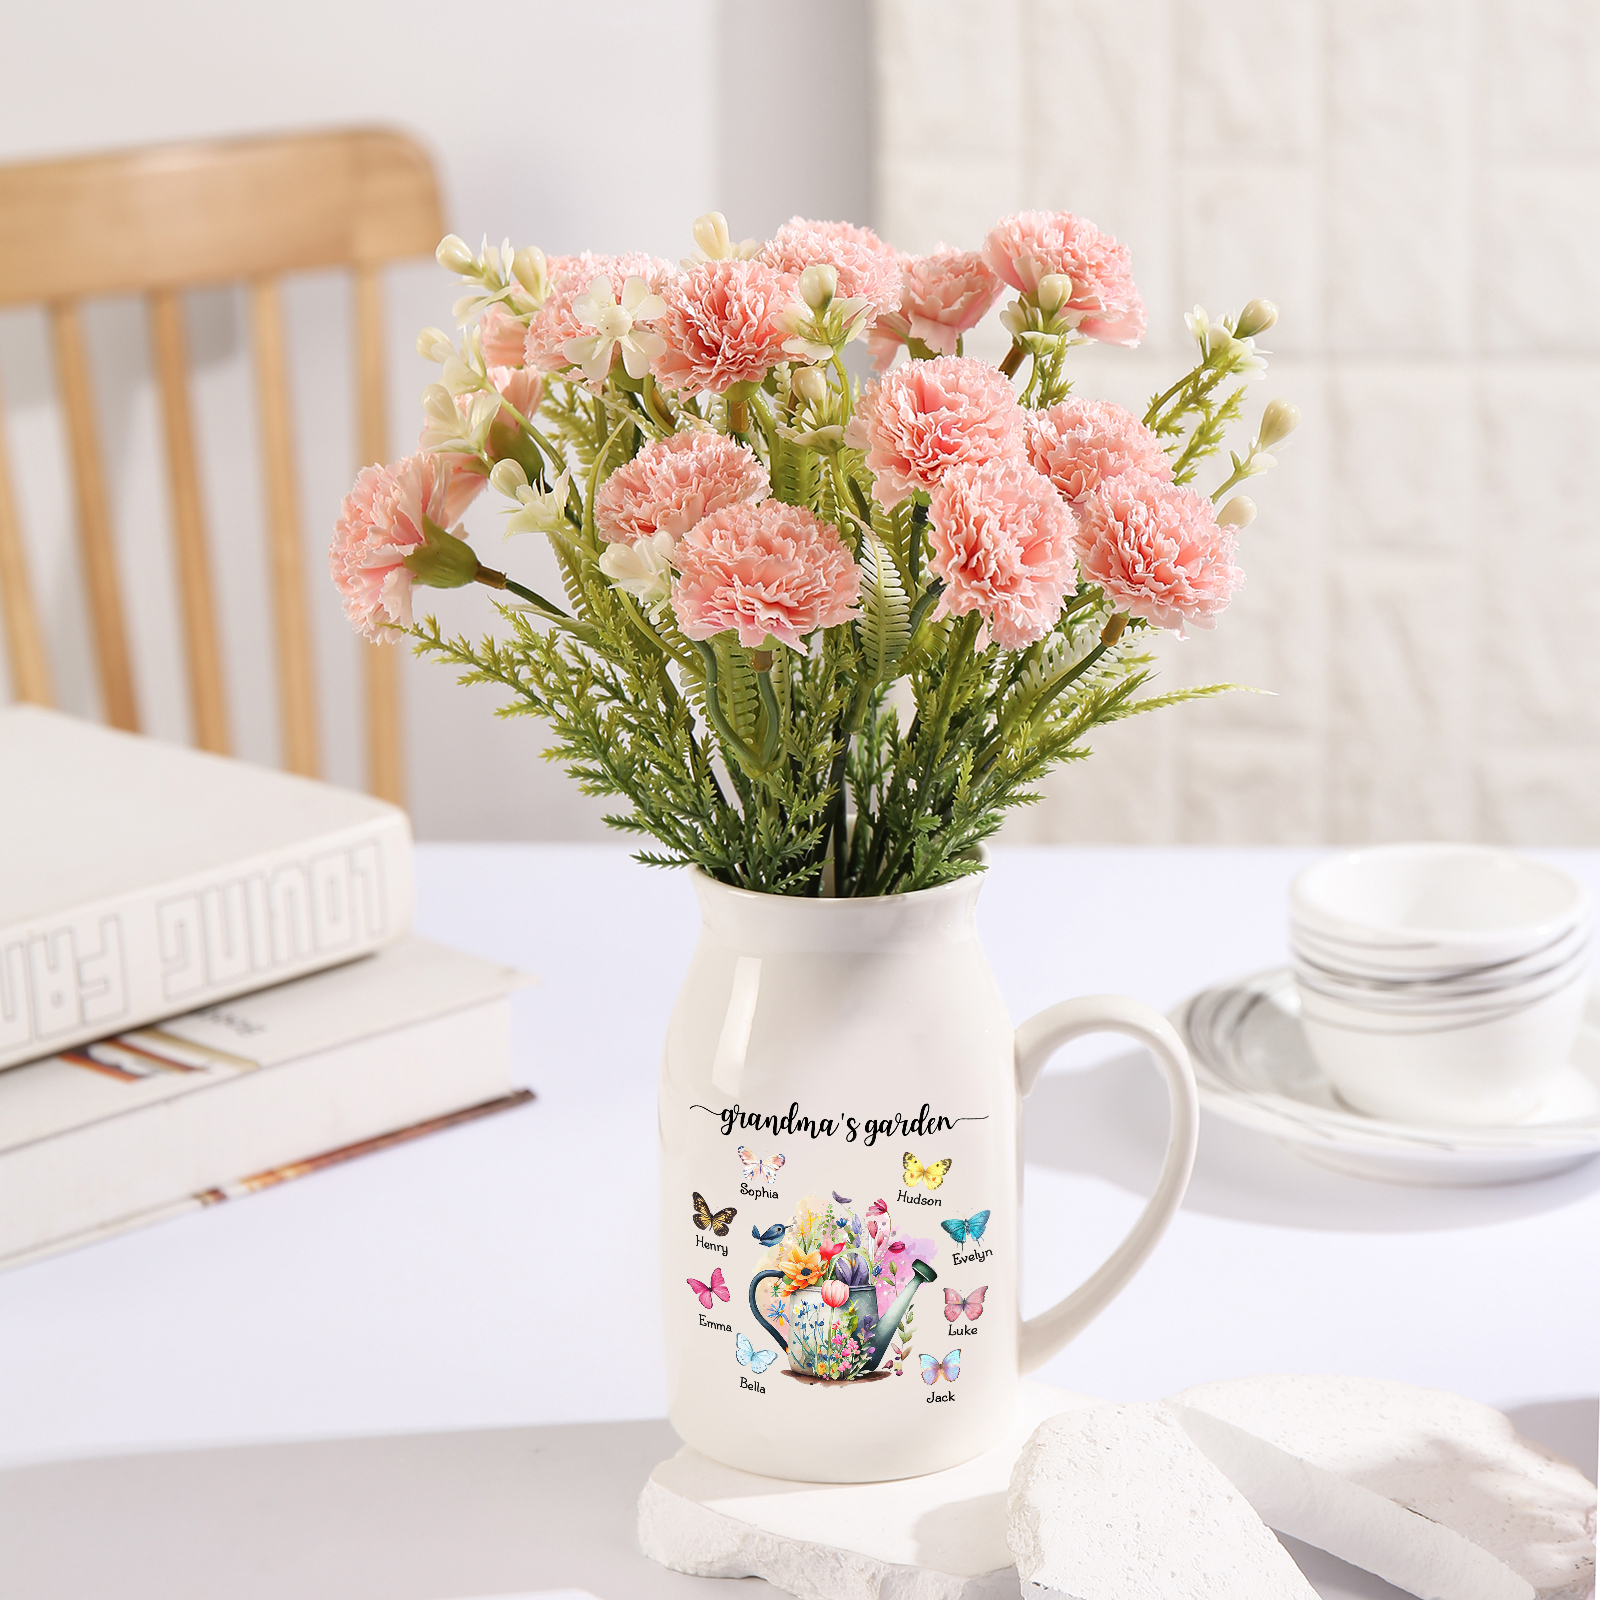 8 Names - Personalized Name "Grandma's Garden" Ceramic Vase as a Gift for Grandma